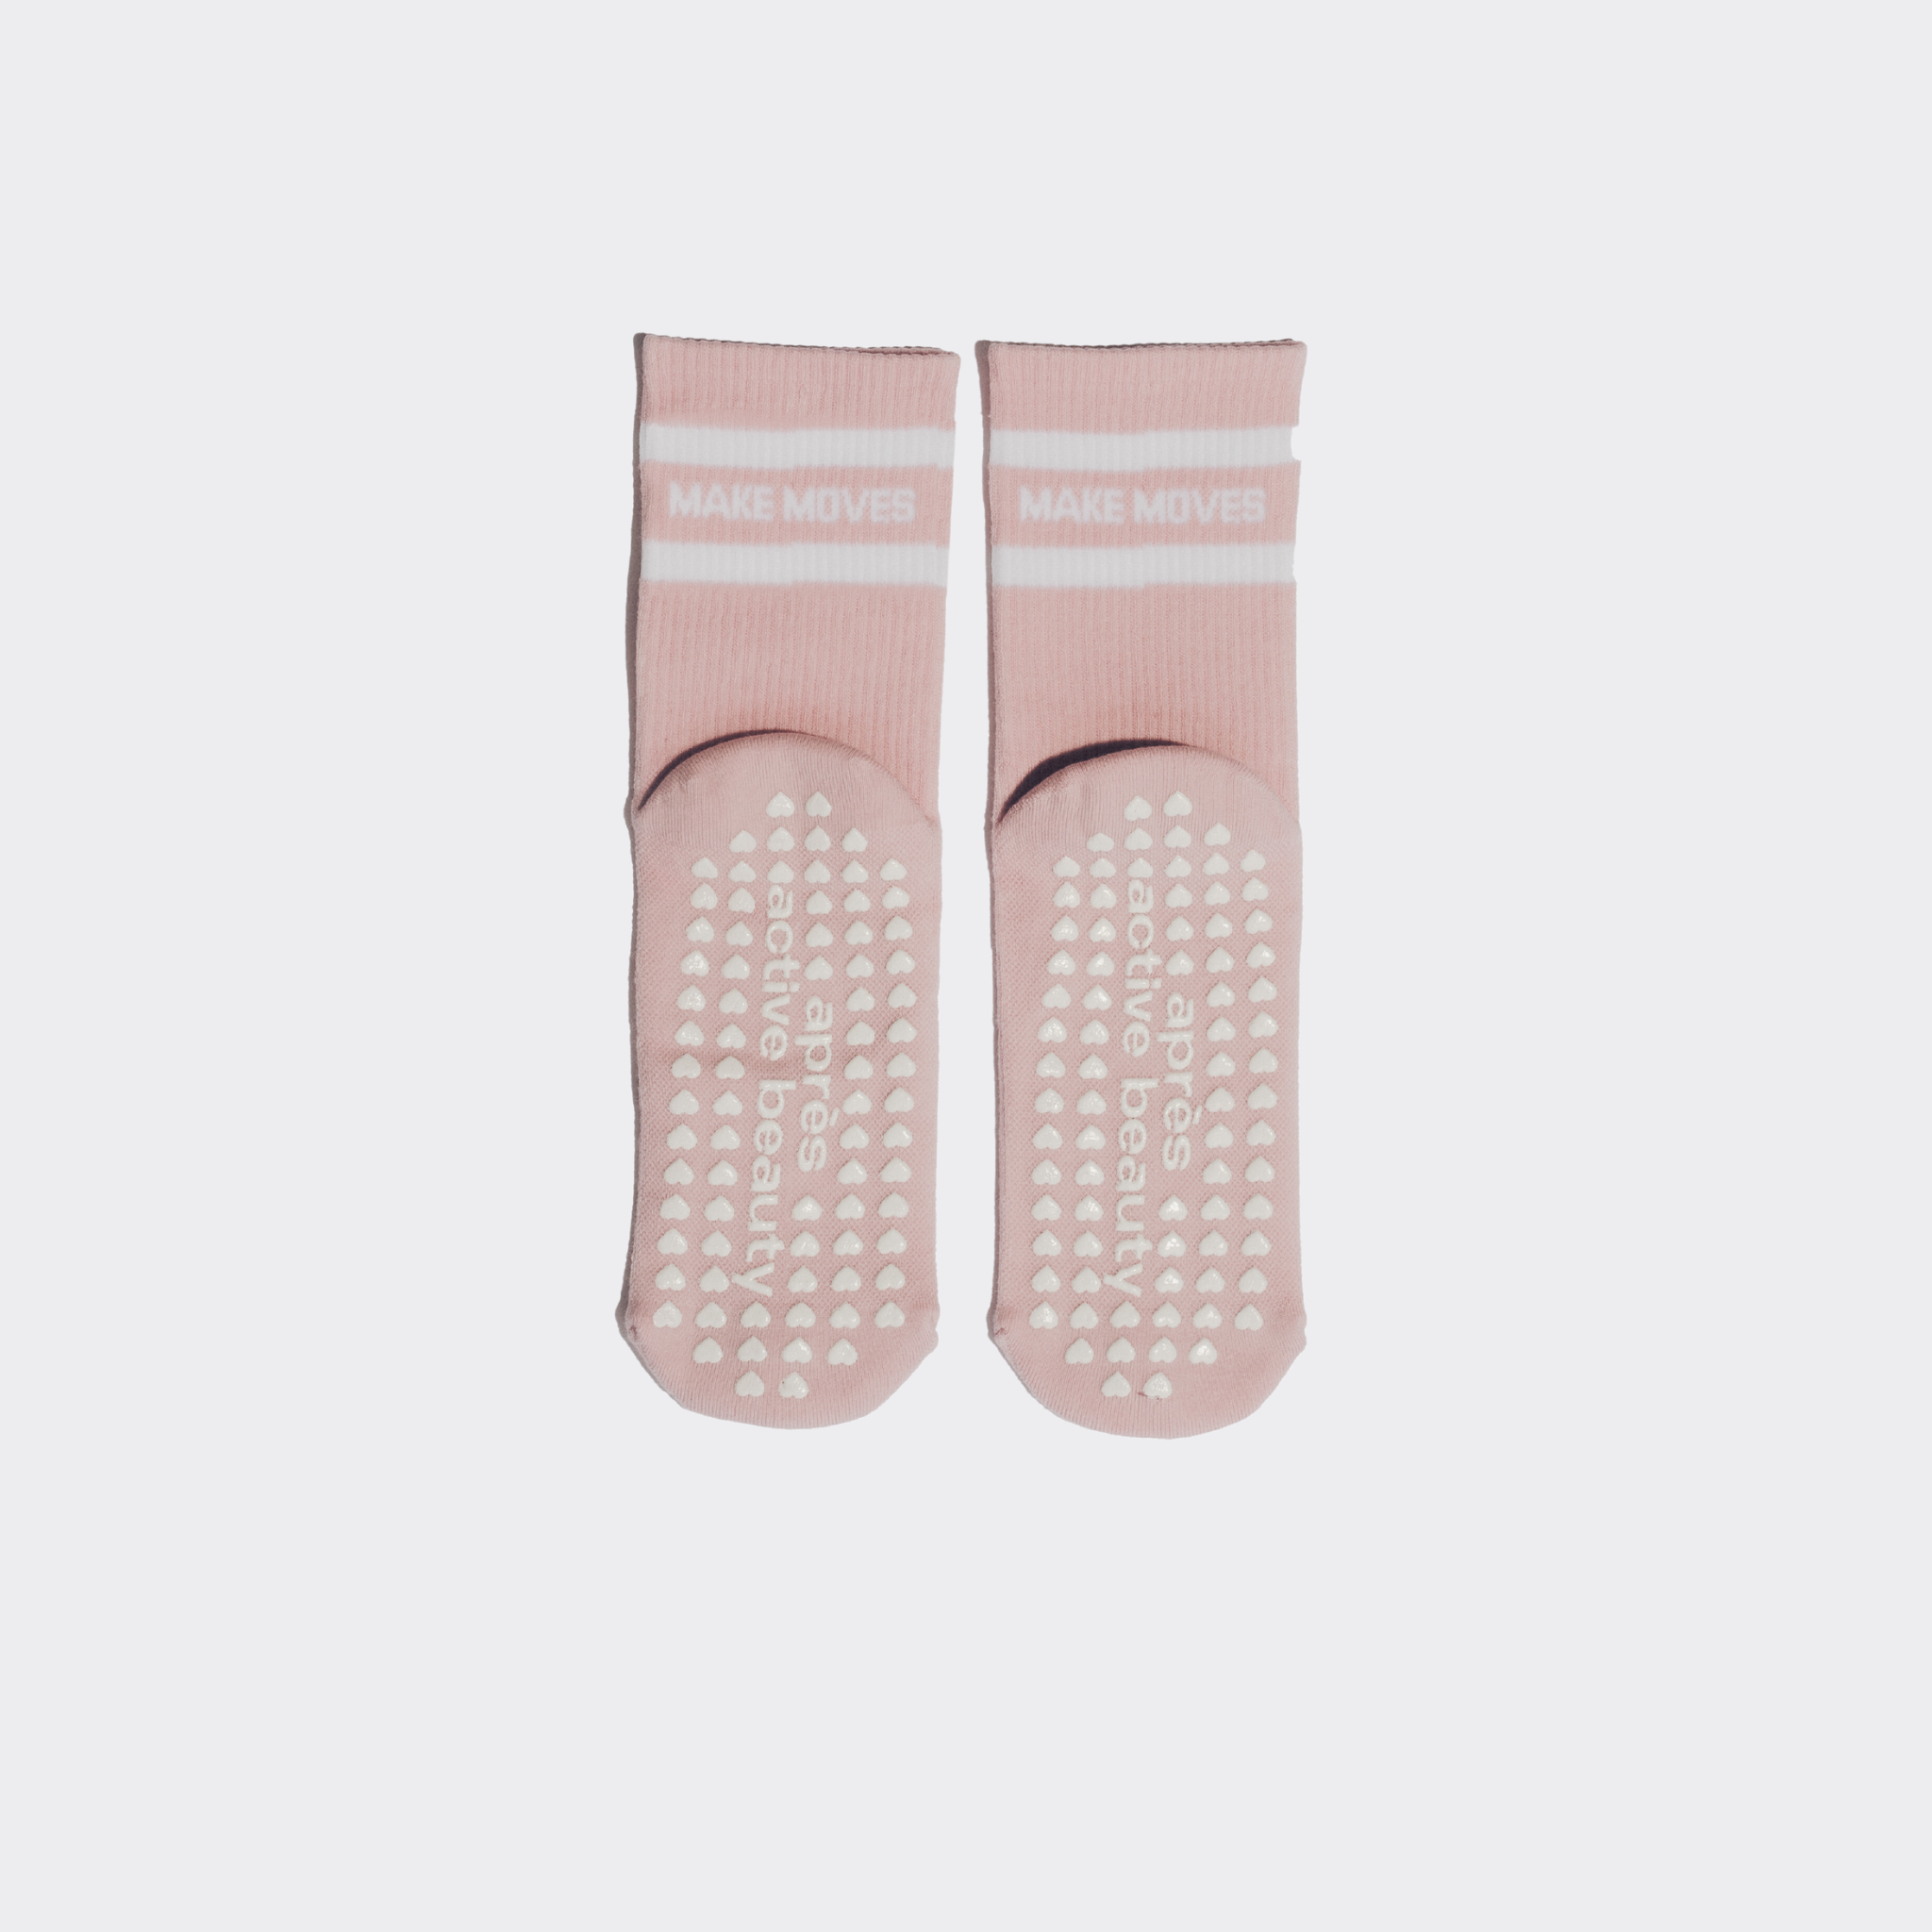 grip socks for reformer pilates - Buy grip socks for reformer